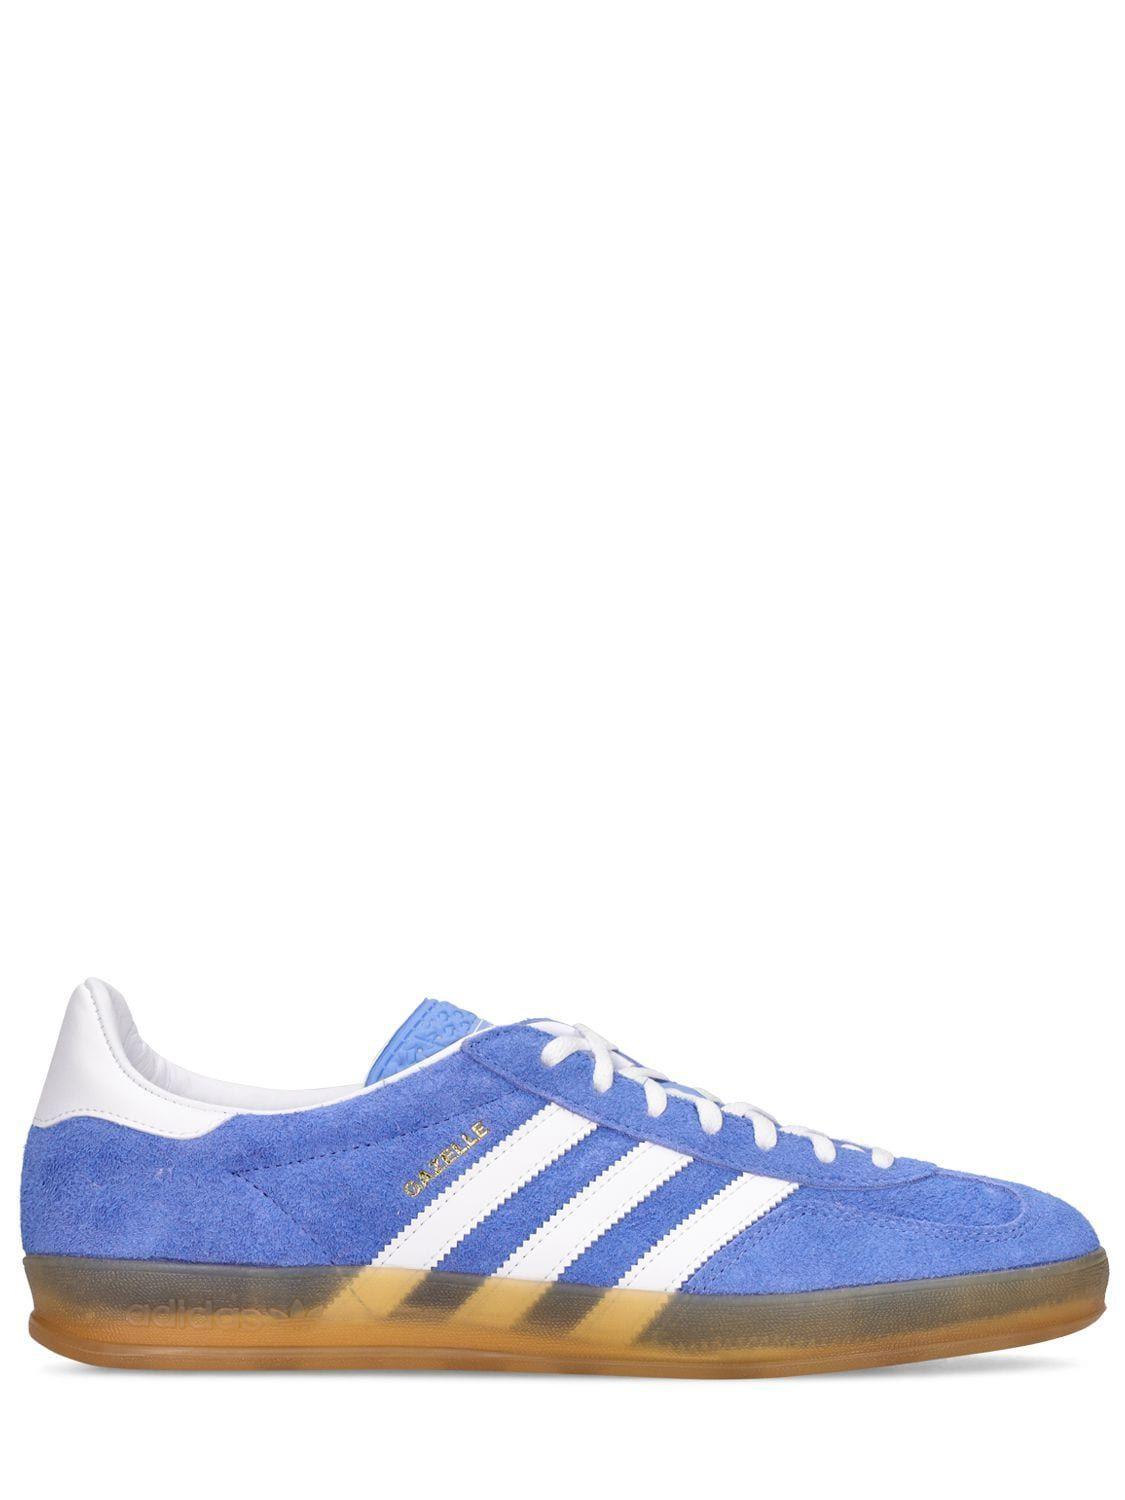 adidas Originals Gazelle Indoor Sneakers in Blue | Lyst